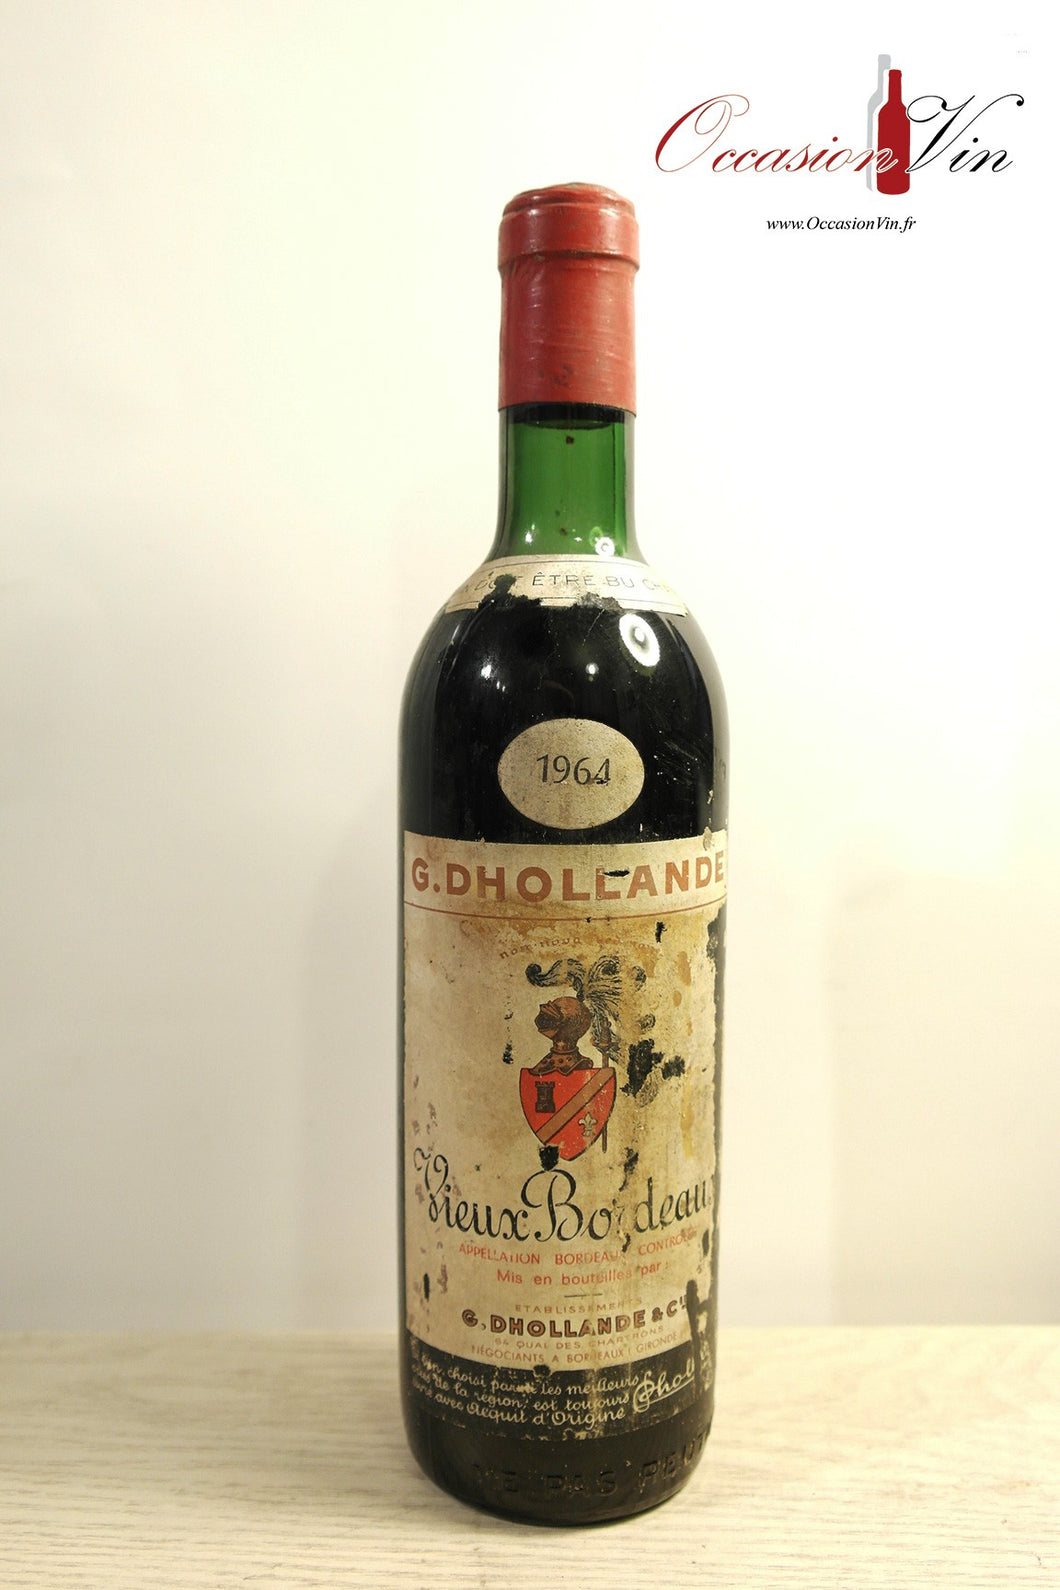 Château Vieux Bordeaux Vin 1964